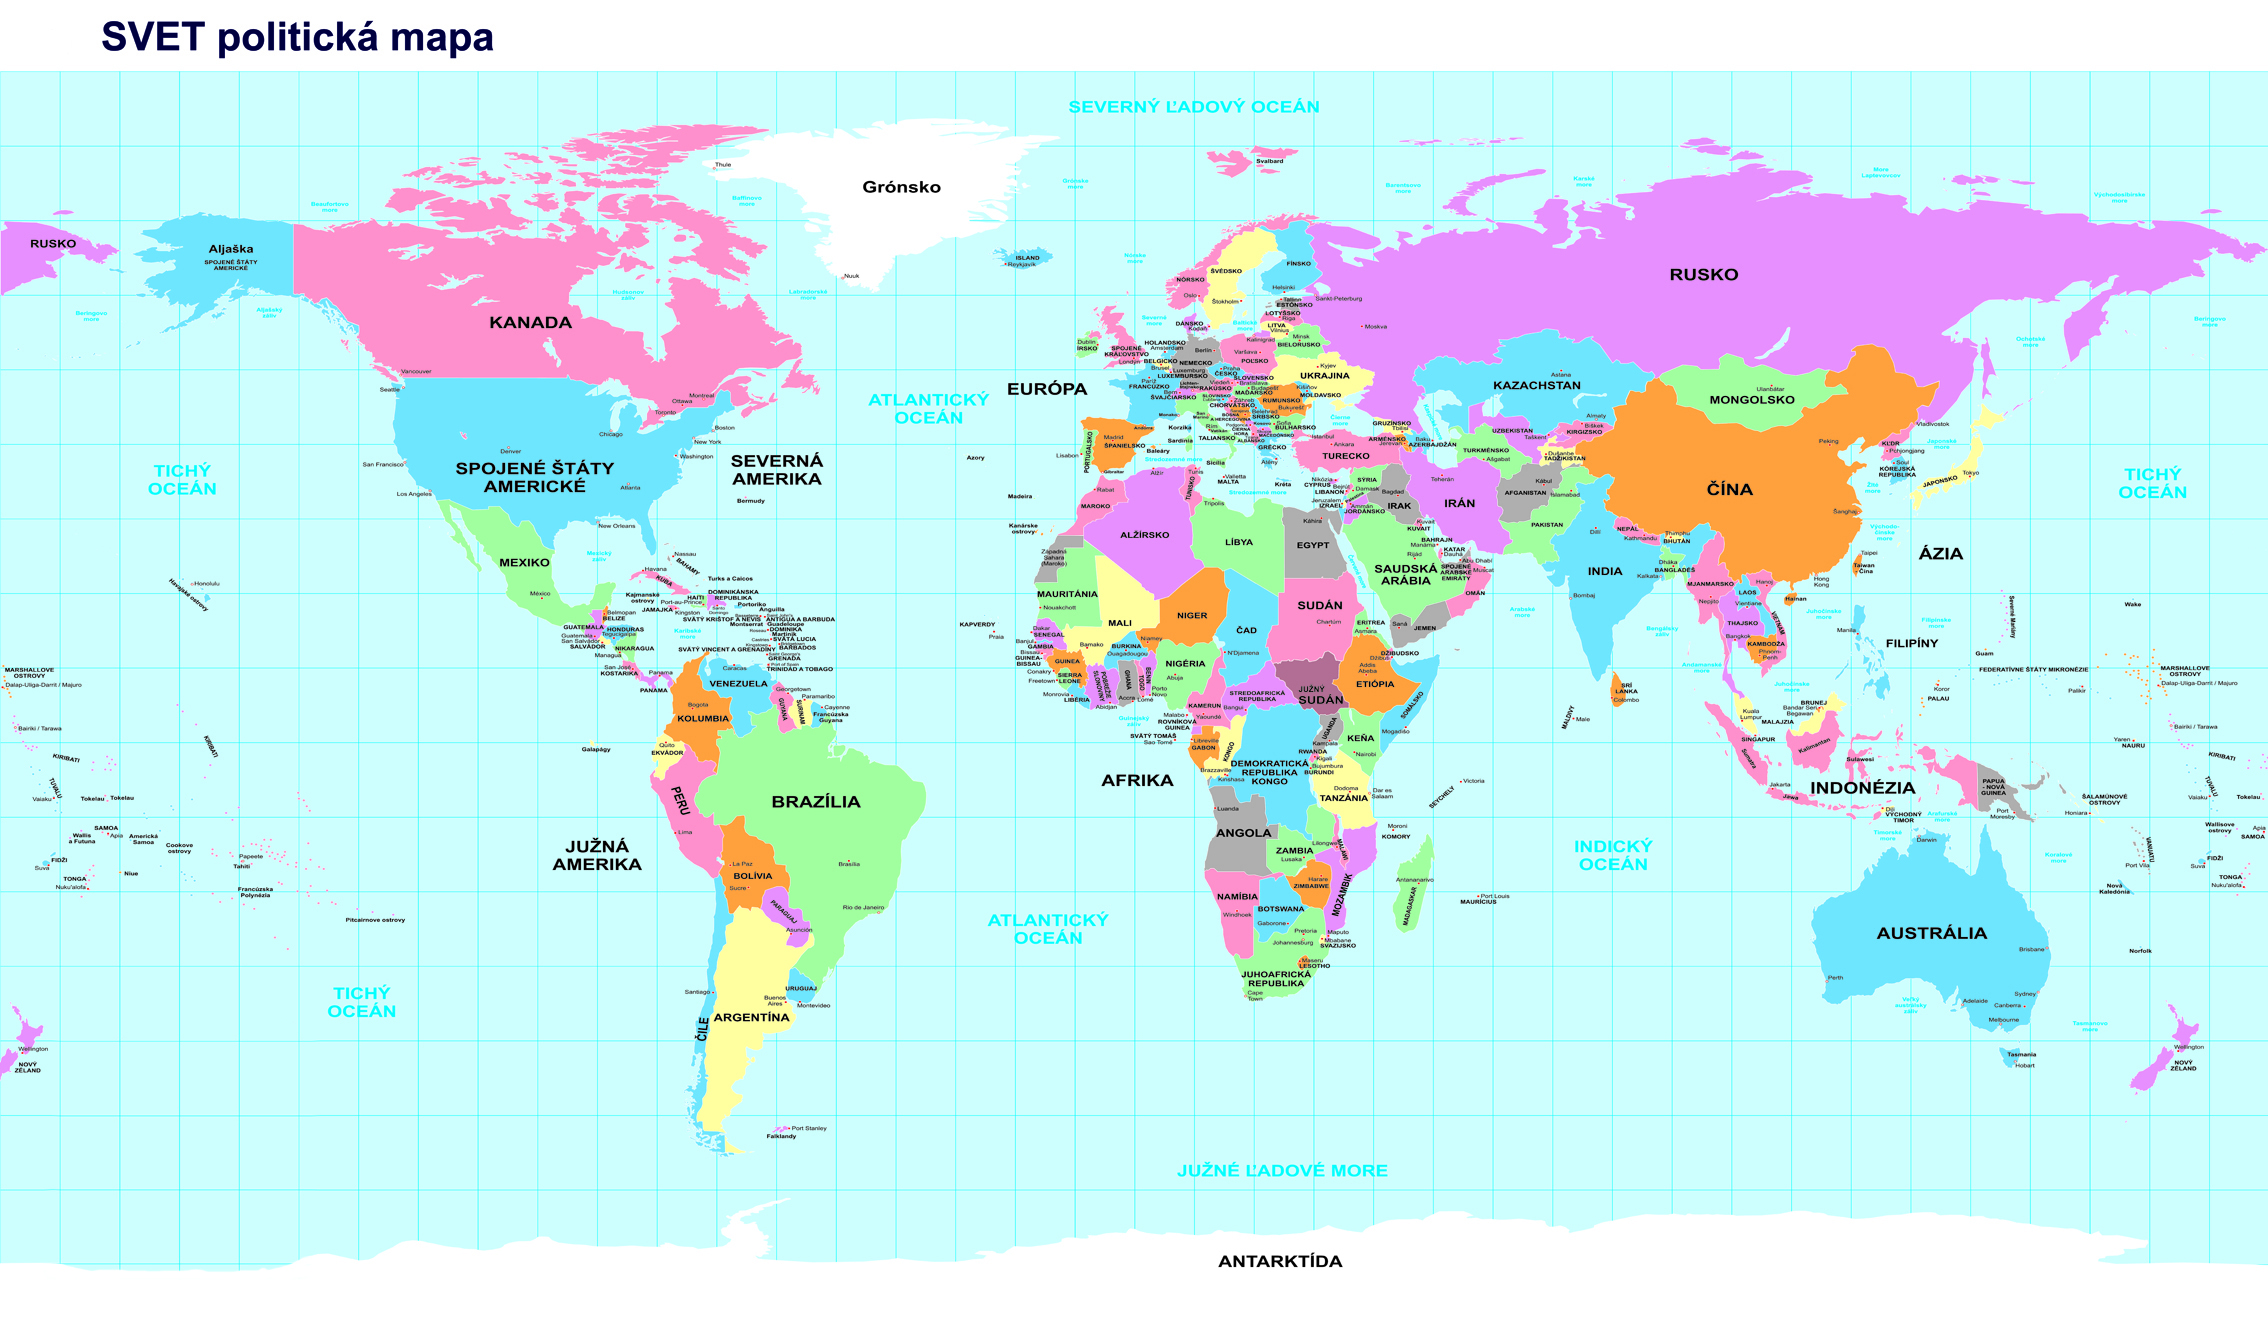 digitalna mapa sveta NÁSTENNÉ MAPY | Svet politický SIMPLE tapeta 175x300cm / slovensky  digitalna mapa sveta